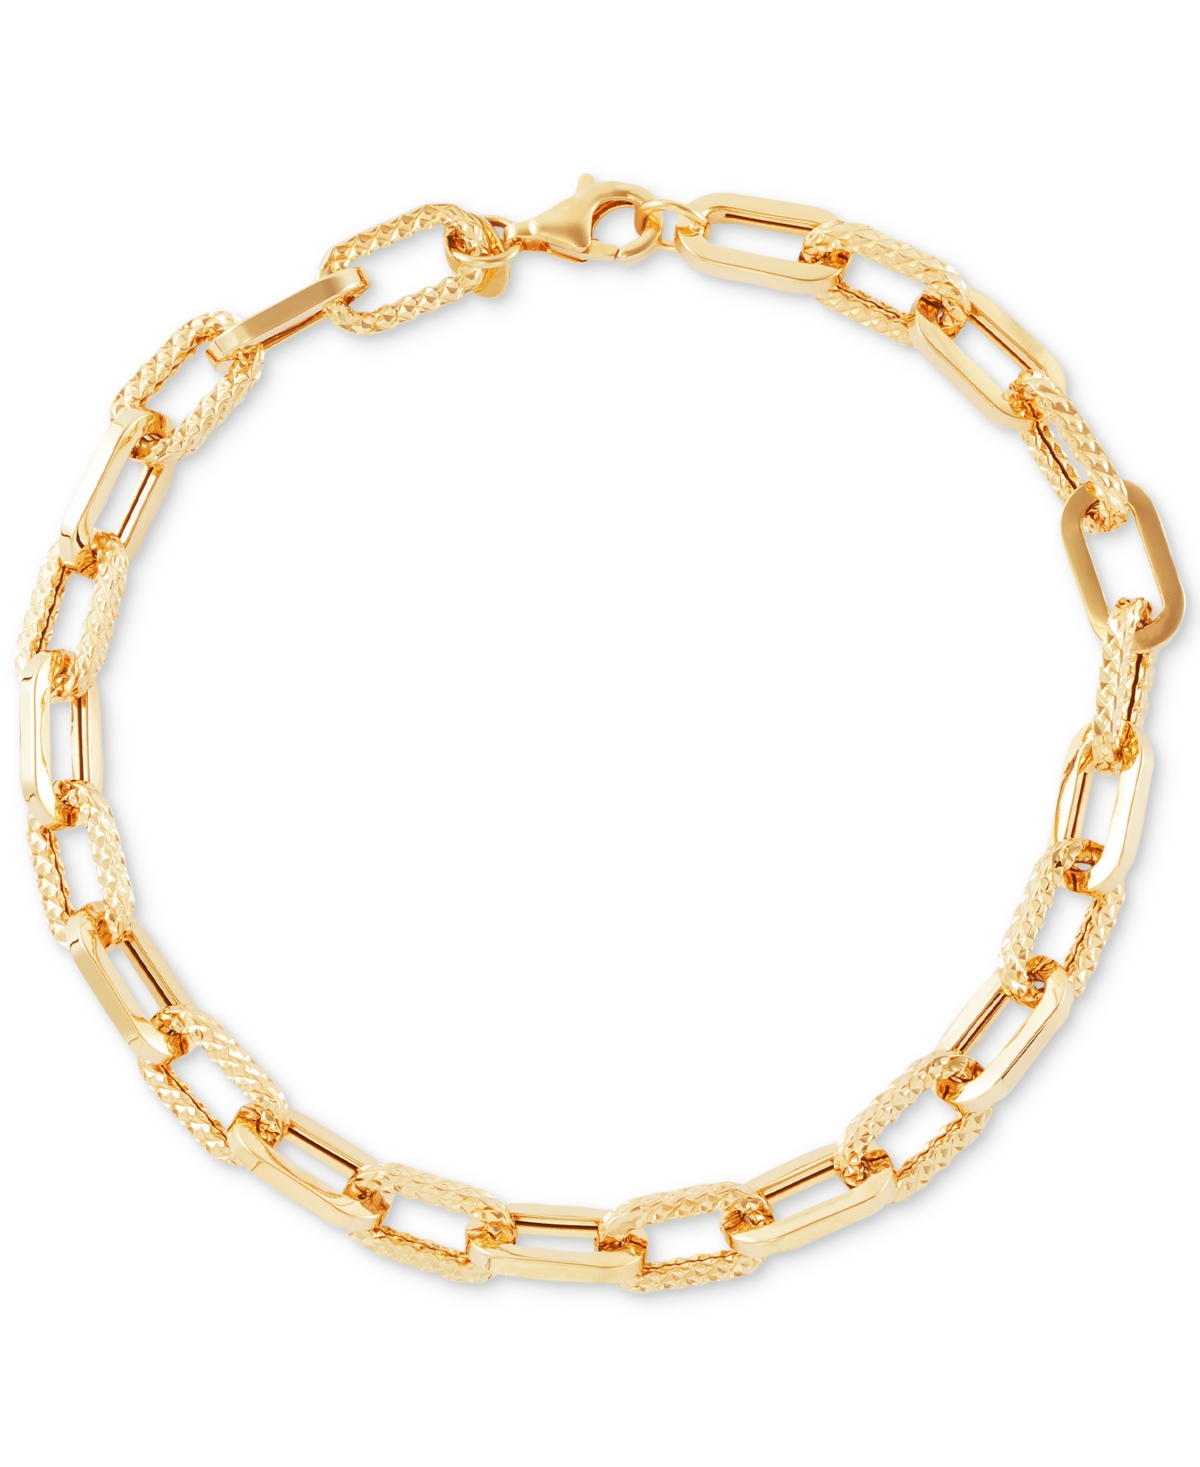 Polished & Textured Large Cable Link Bracelet in 10k Gold - Gold